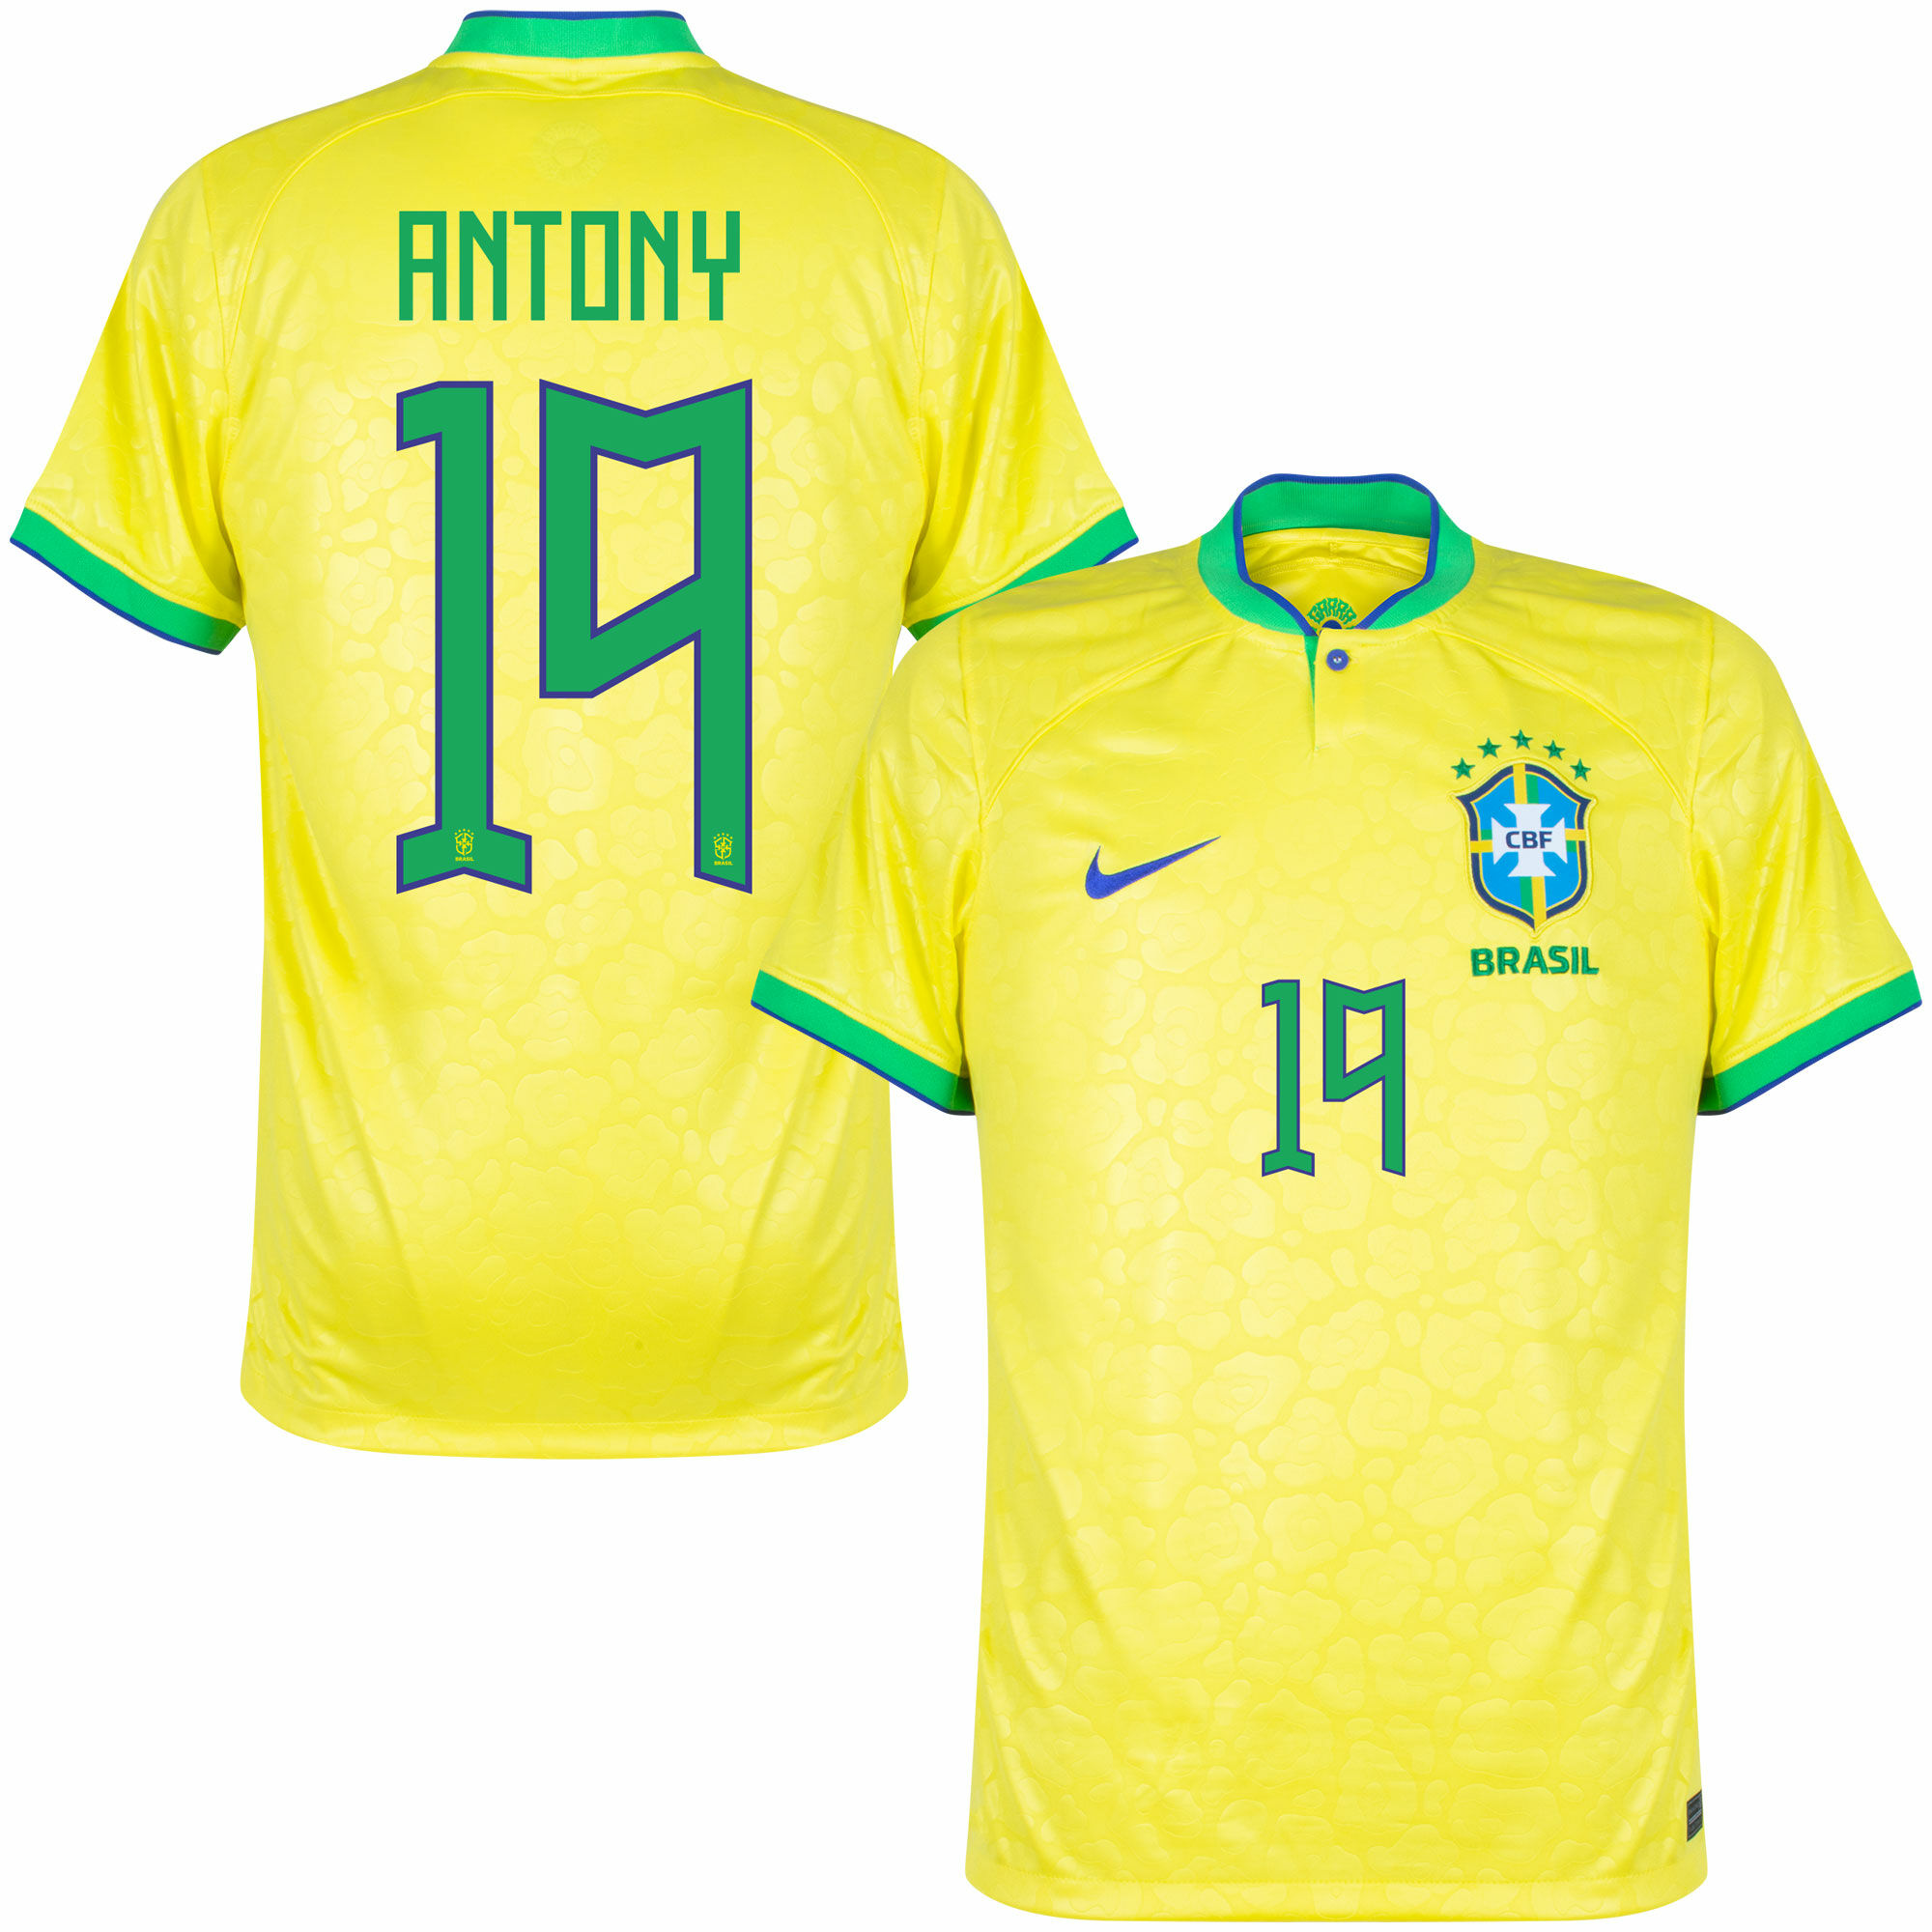 Brazílie - Dres fotbalový - číslo 19, oficiální potisk, žlutý, Antony, domácí, sezóna 2022/23